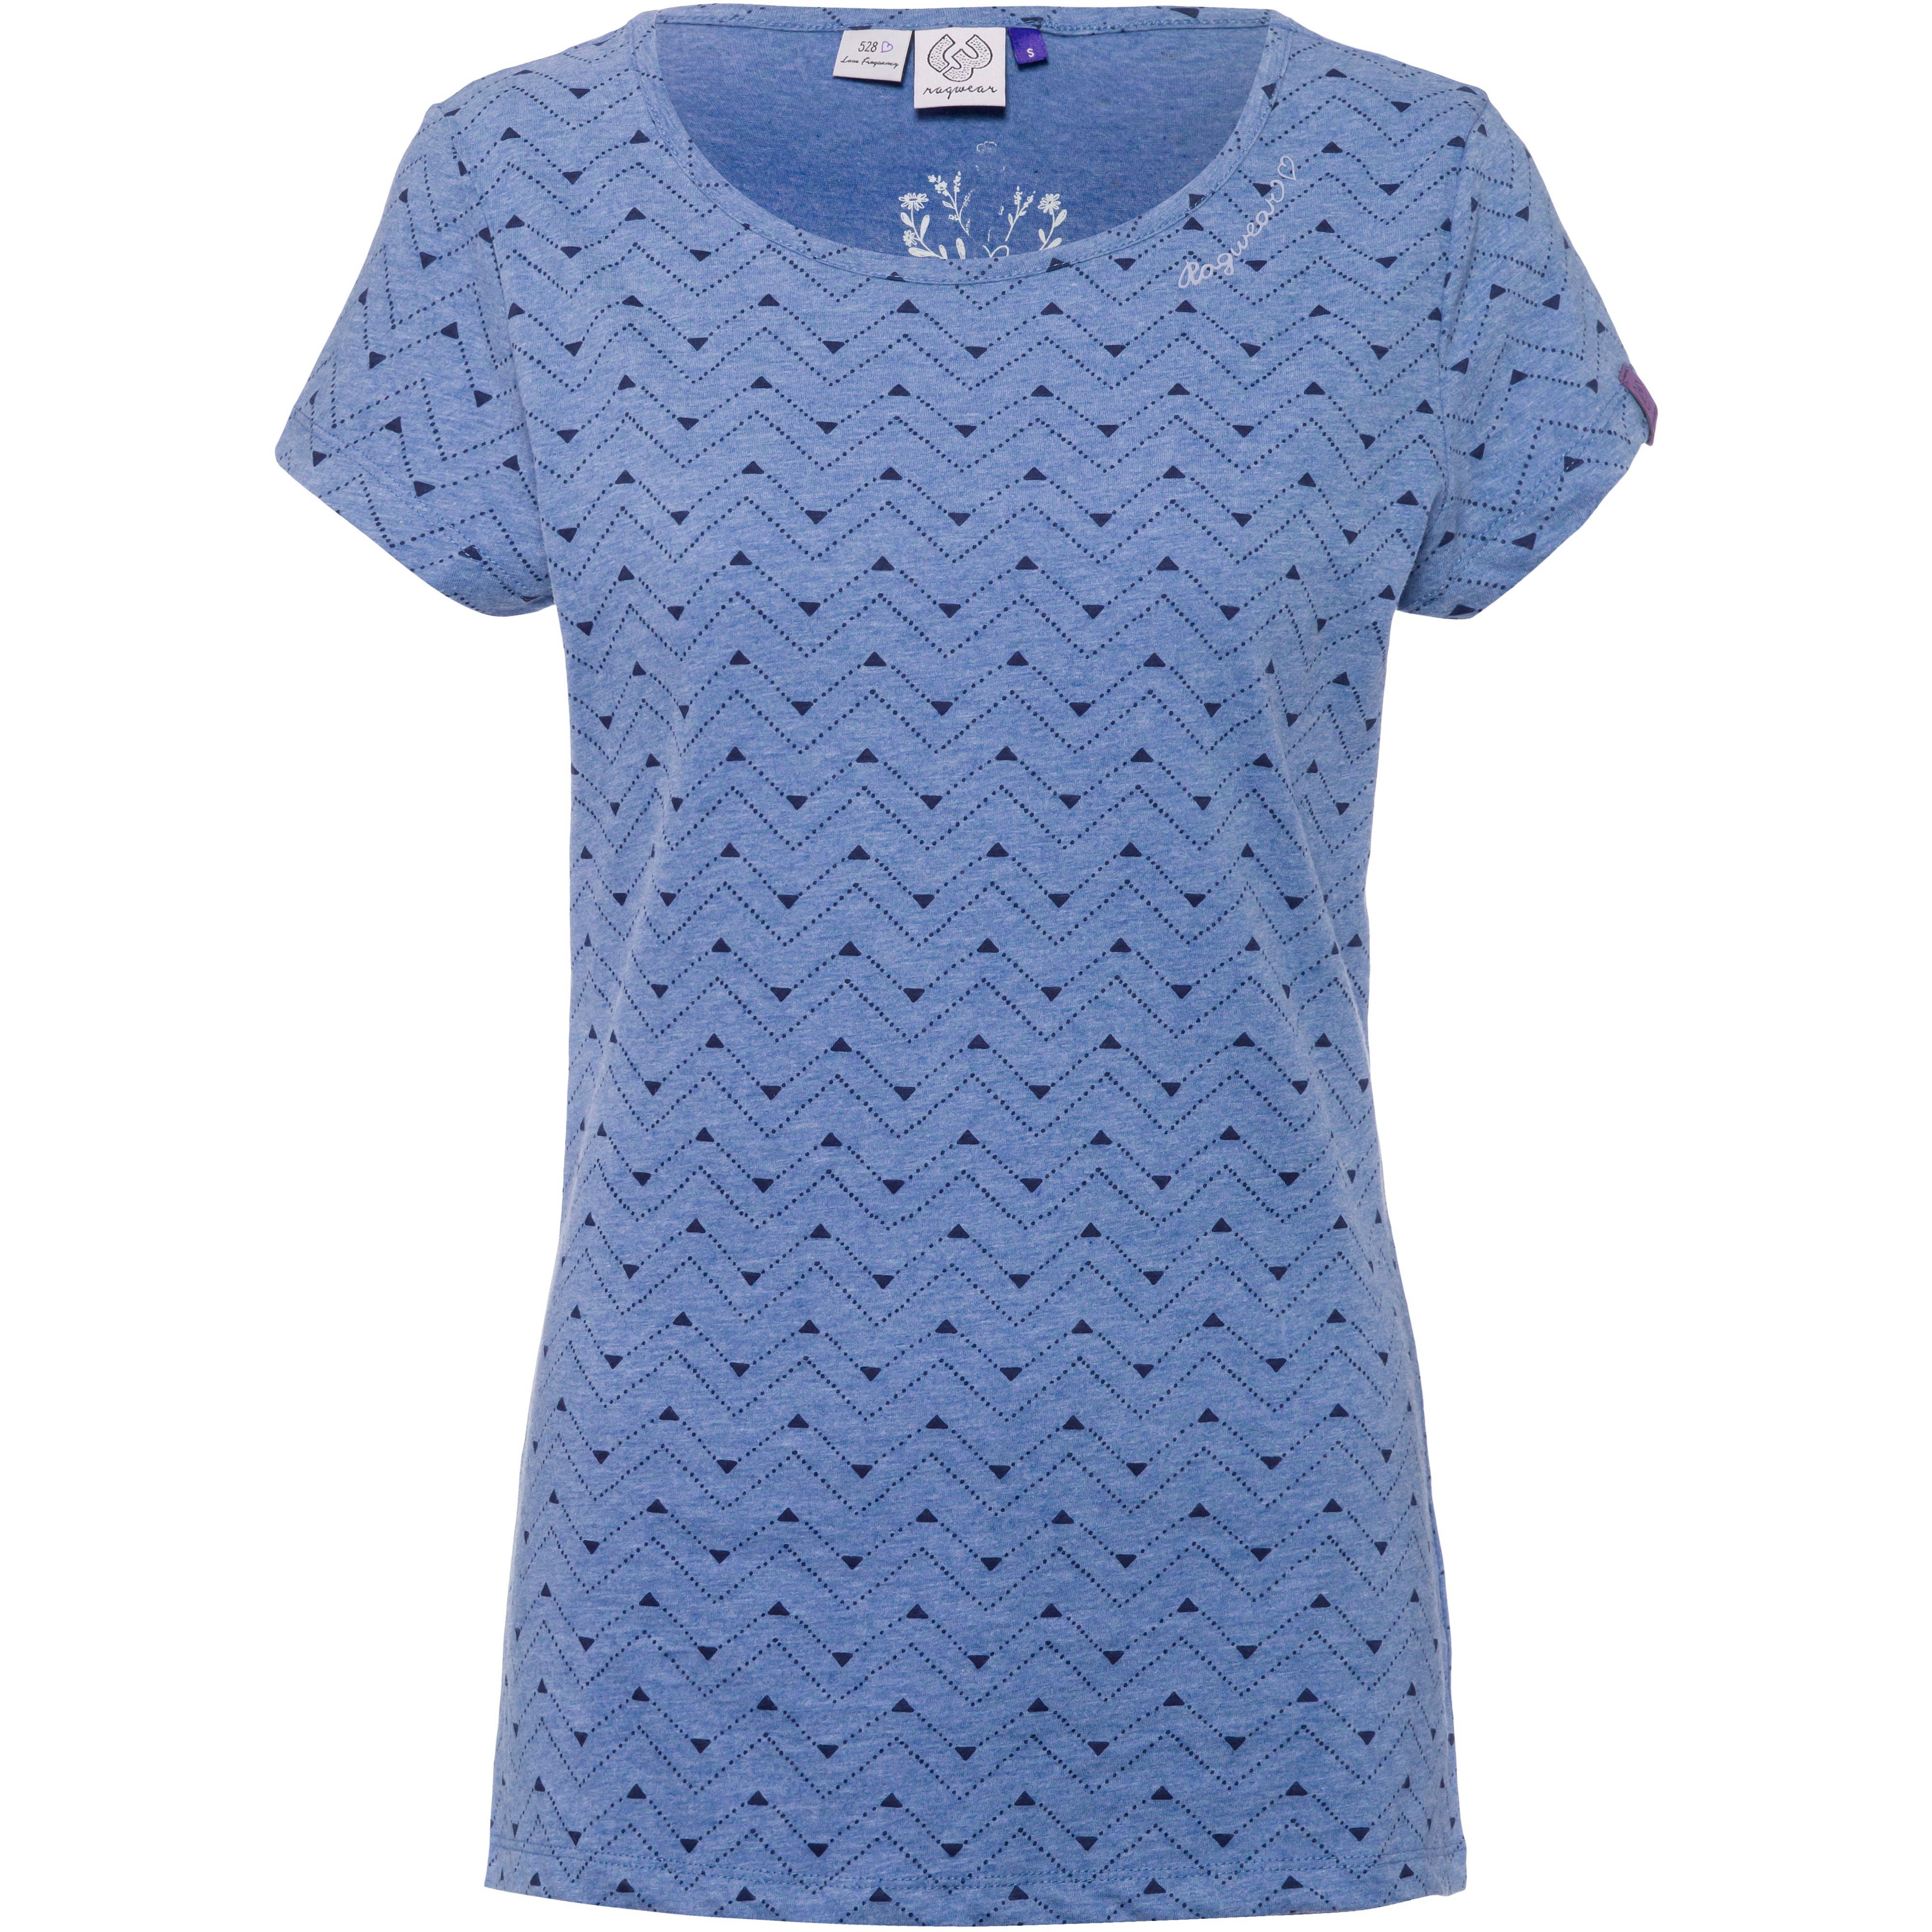 Ragwear Mint melange T-Shirt Online SportScheck Shop kaufen im denim Damen blue von Zag Zig